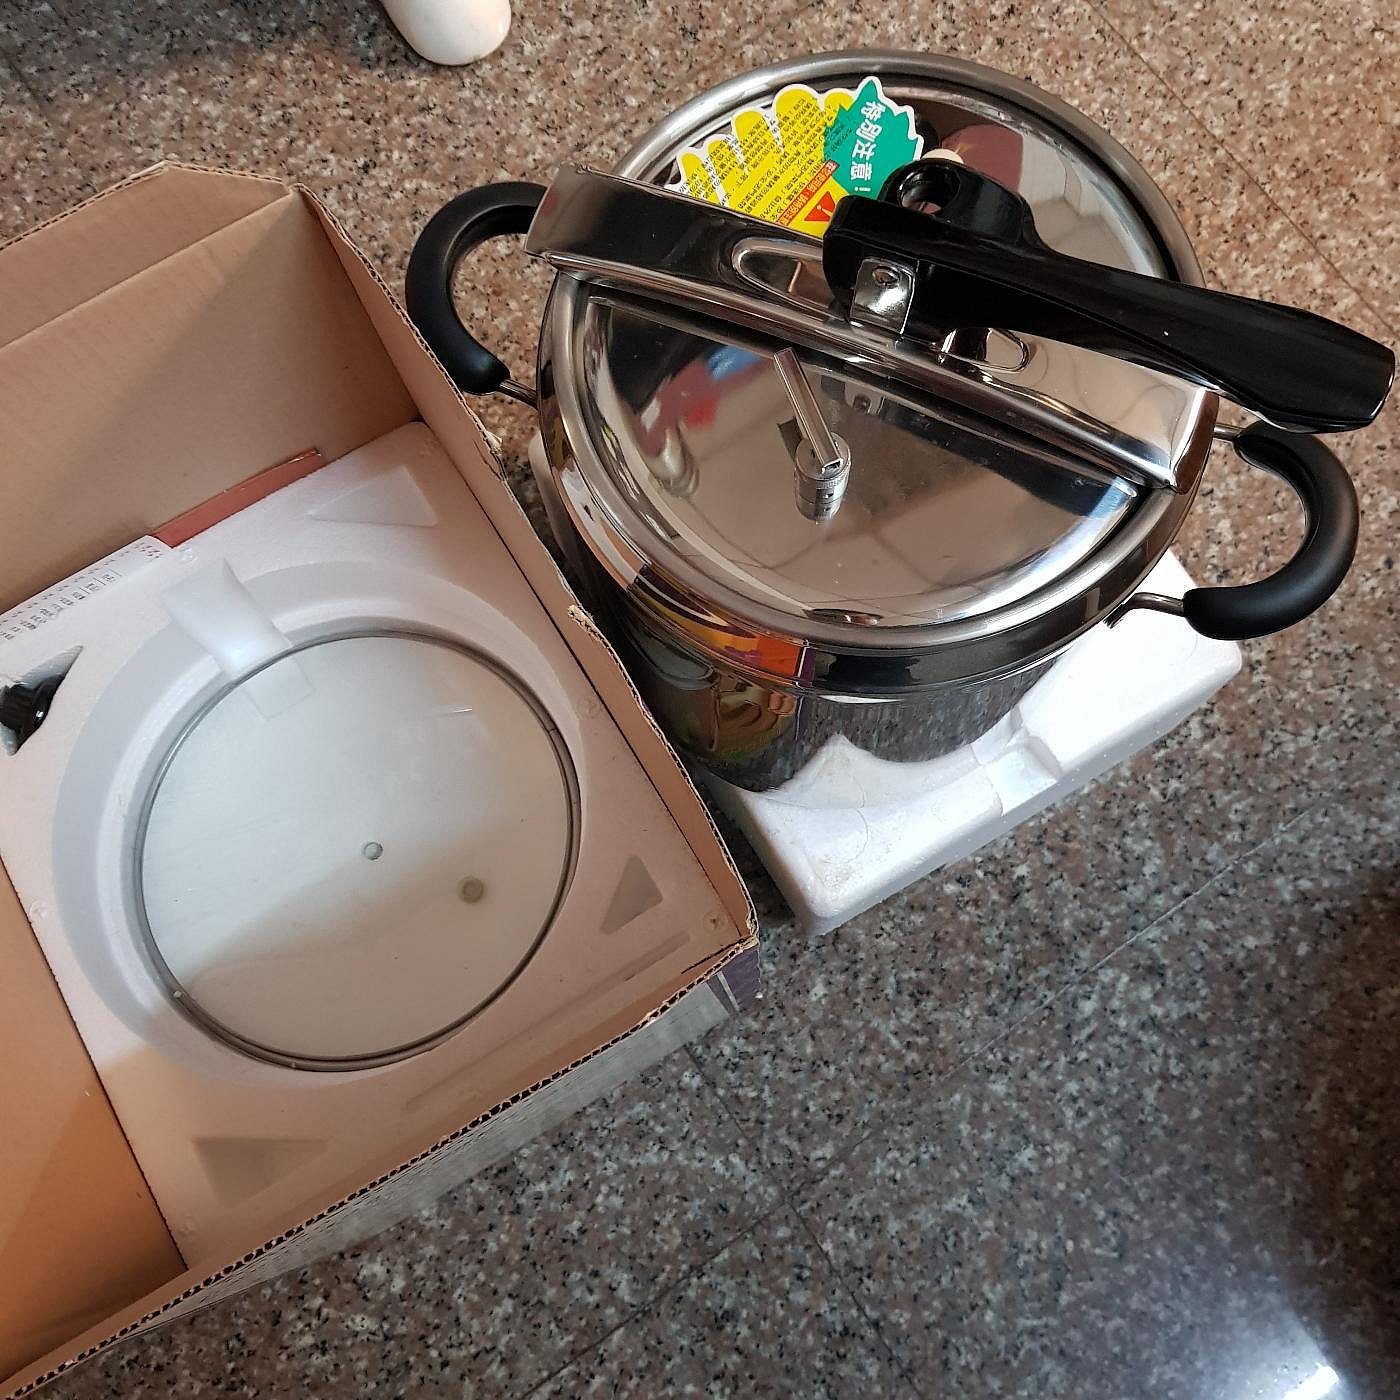 廚寶 義大利式快鍋 壓力鍋 全新未使用 10.5公升 便宜賣 歡迎自取